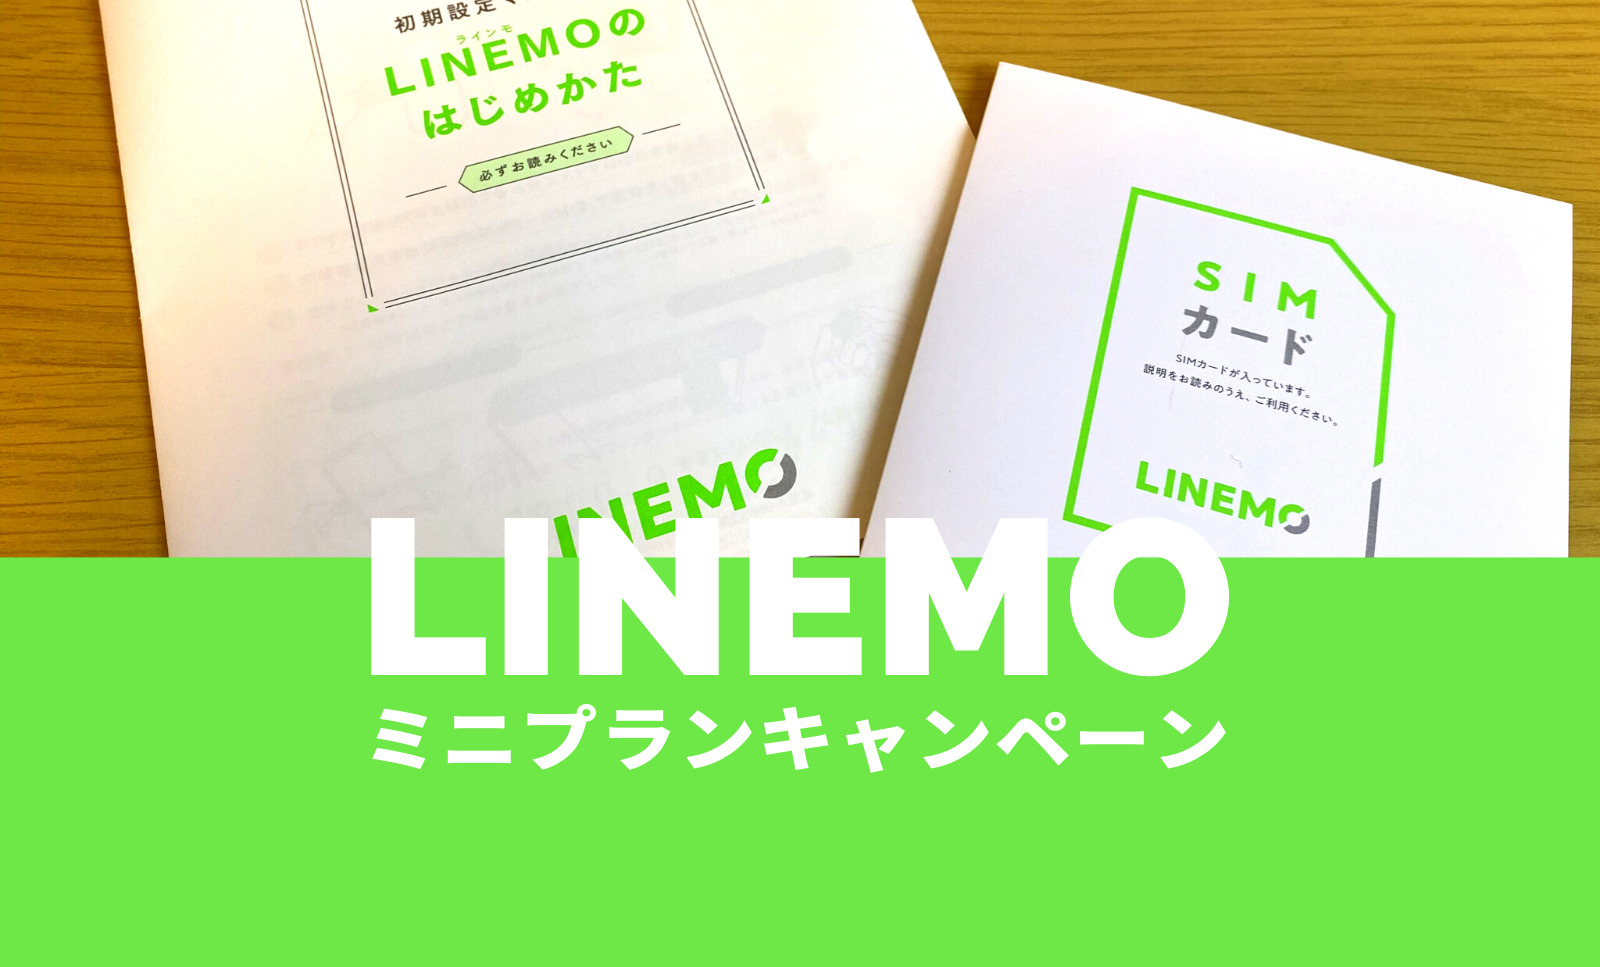 LINEMO(ラインモ)のミニプランが対象のキャンペーンまとめ【2023年2月】のサムネイル画像